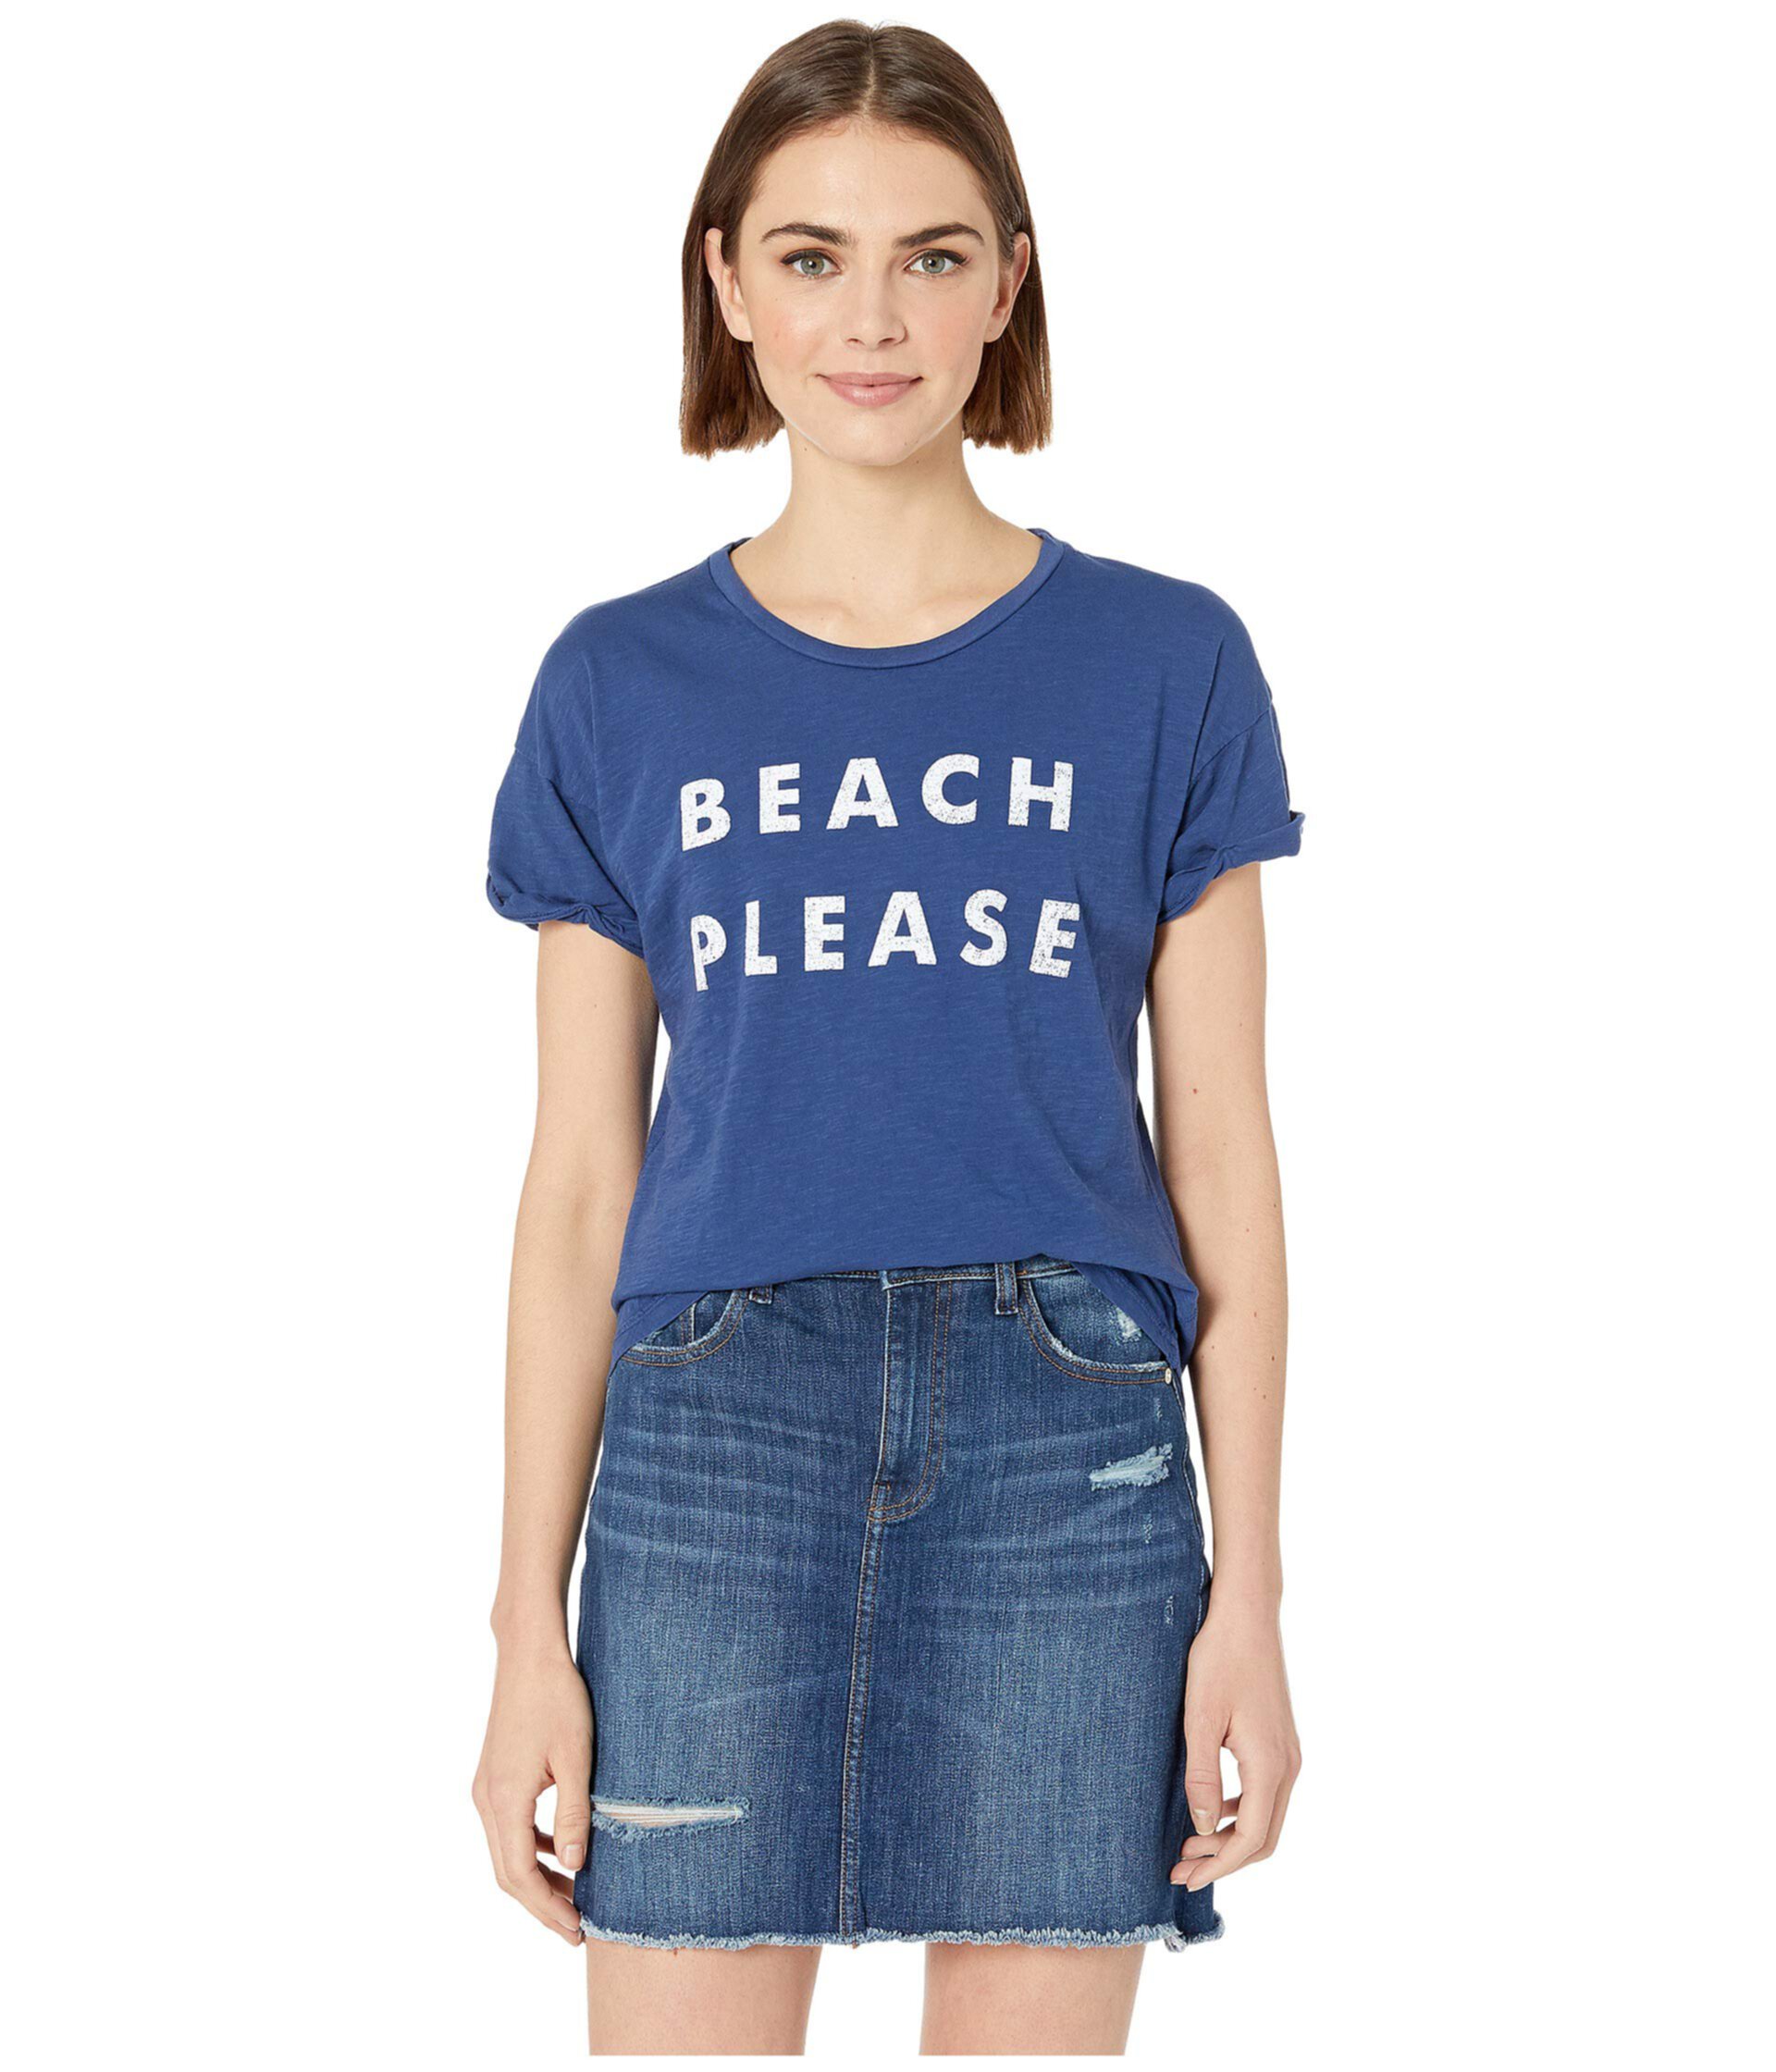 Пляжная футболка Slub с короткими рукавами, пожалуйста, в клетку The Original Retro Brand